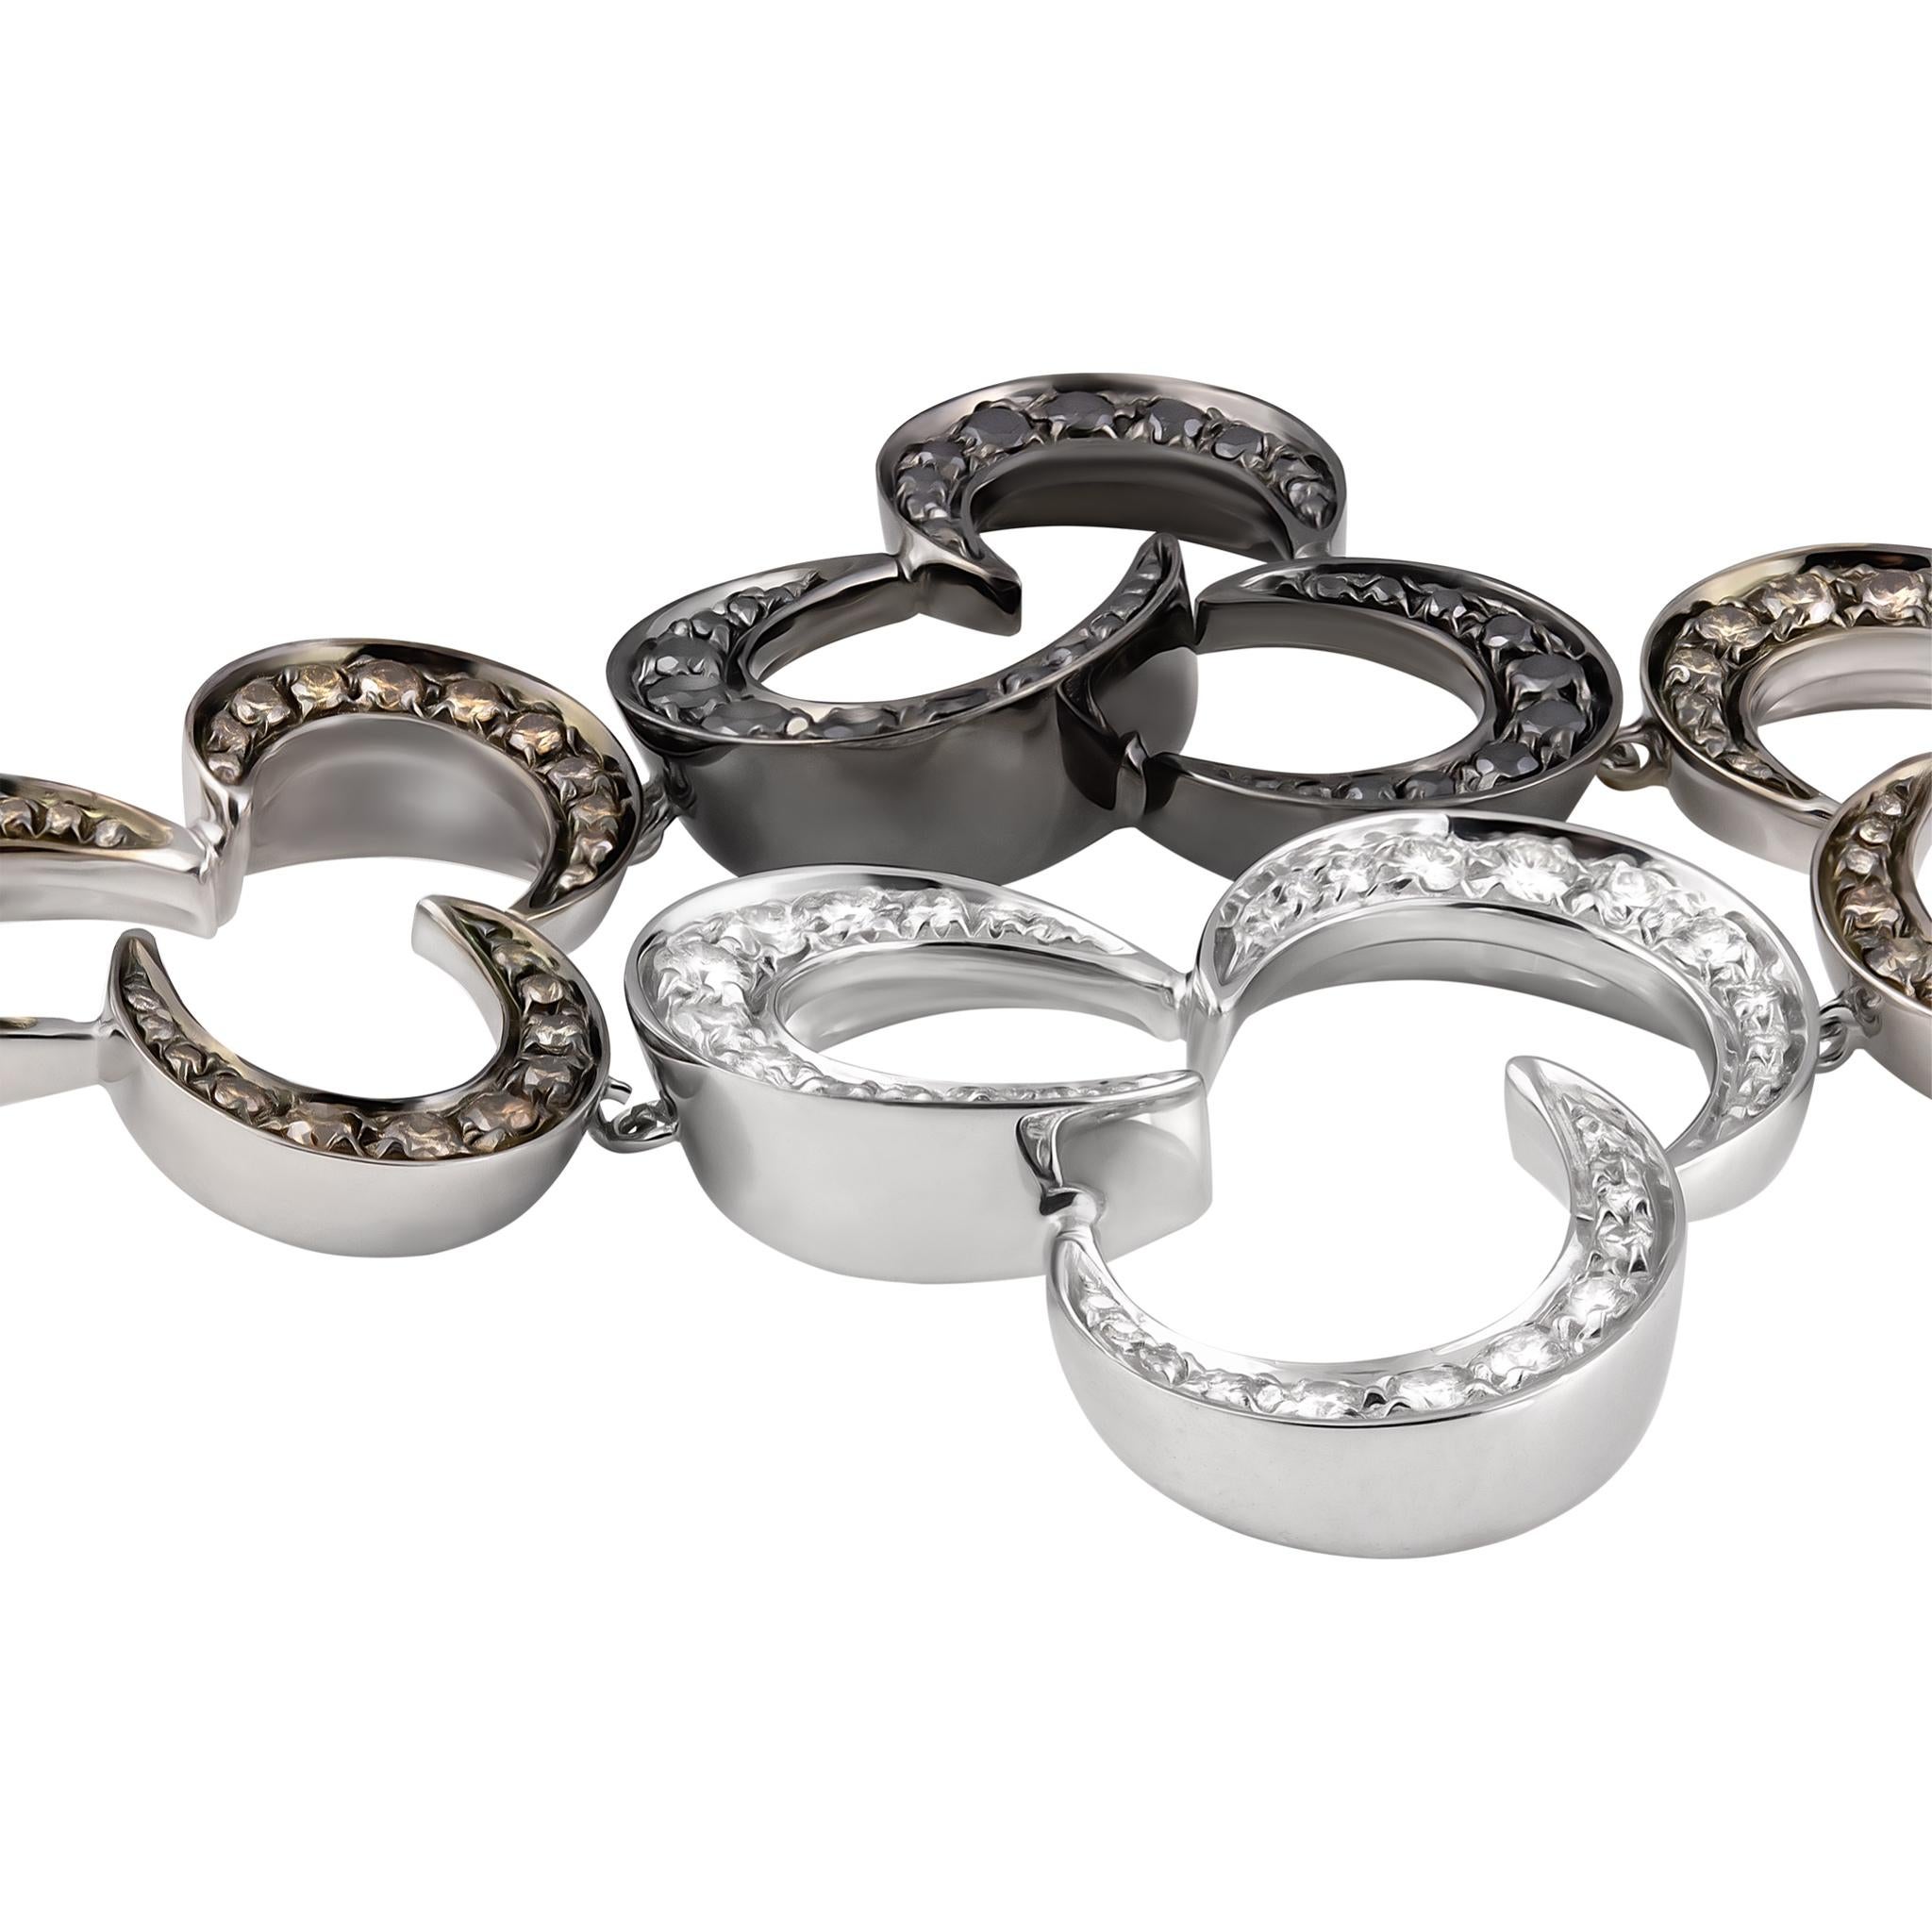 Bracelet IO SI
Or blanc 18K
Diamants noirs et blancs : 2.45ctw
Fabriqué en Italie
Prix de détail : 27 000,00
Numéro de modèle : 90095BR120
SKU : BLU01887